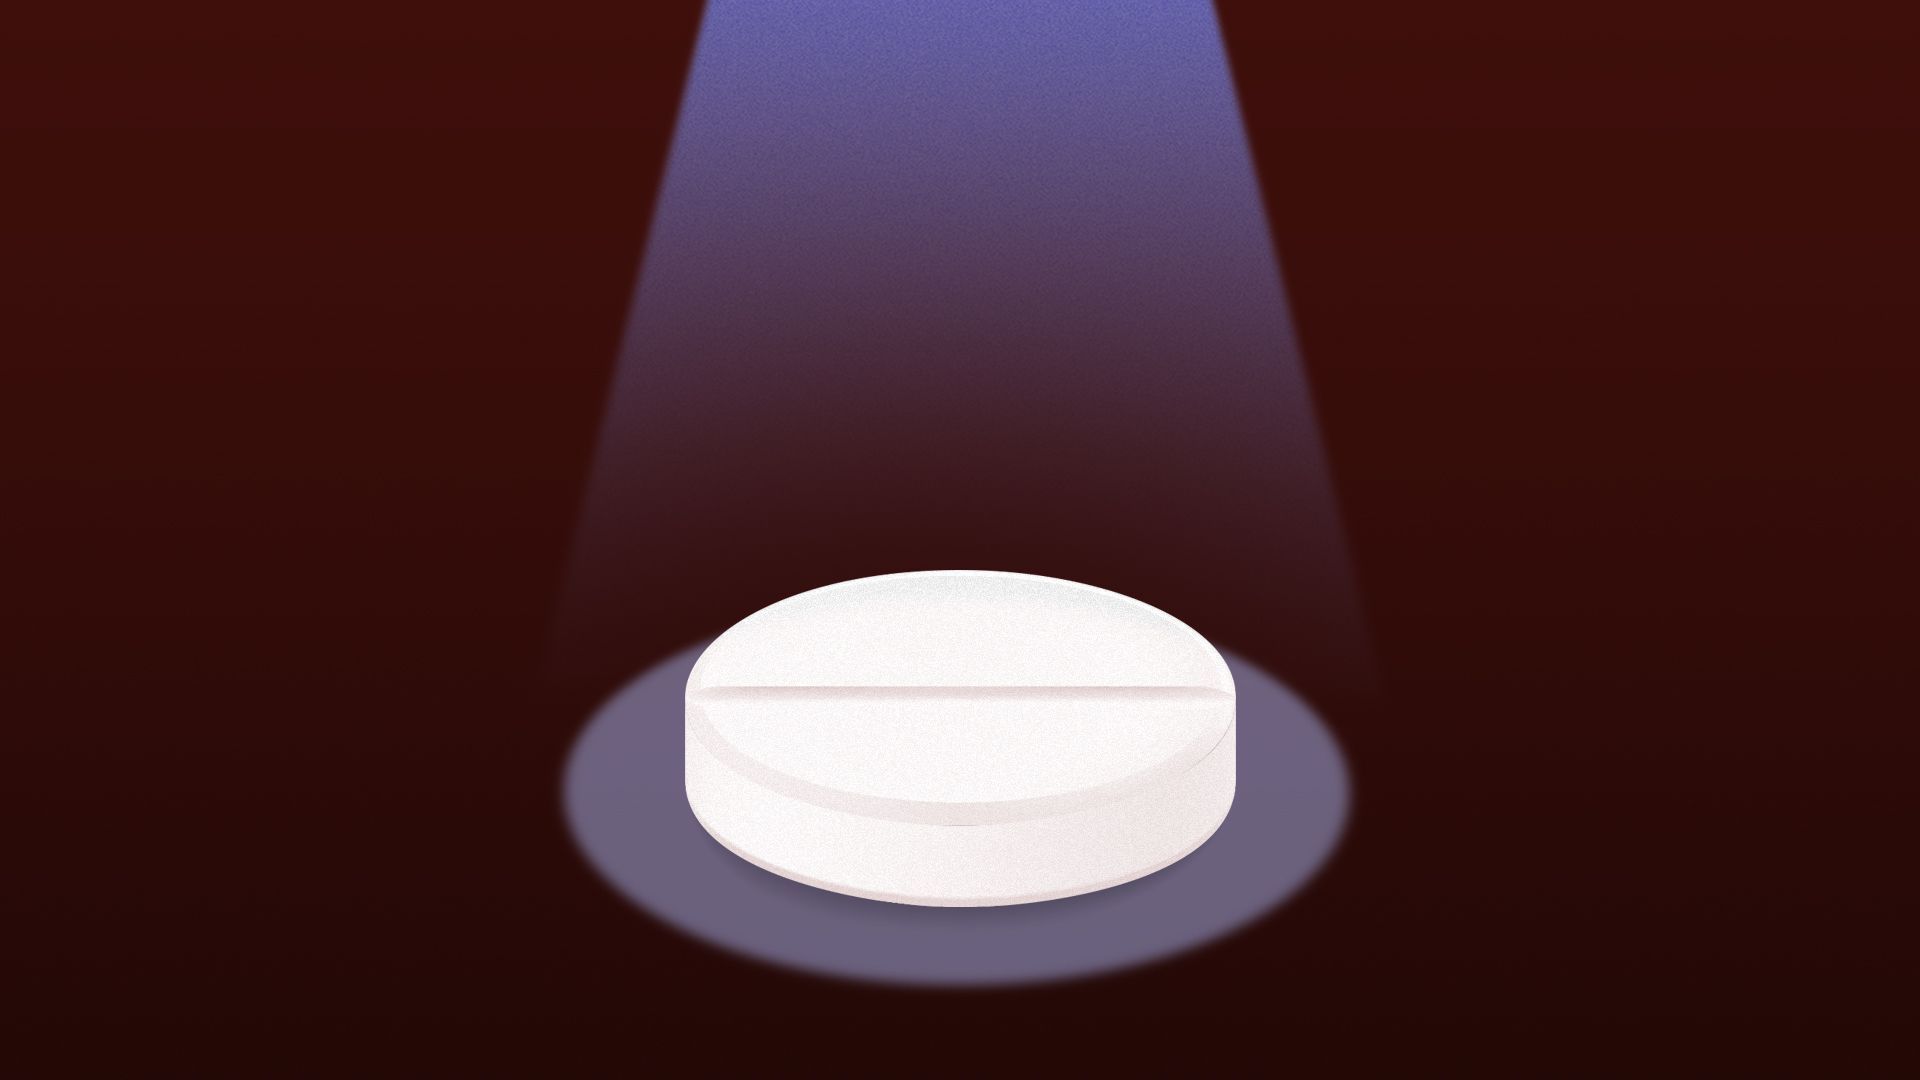 Illustration of a spotlight shining on a pill